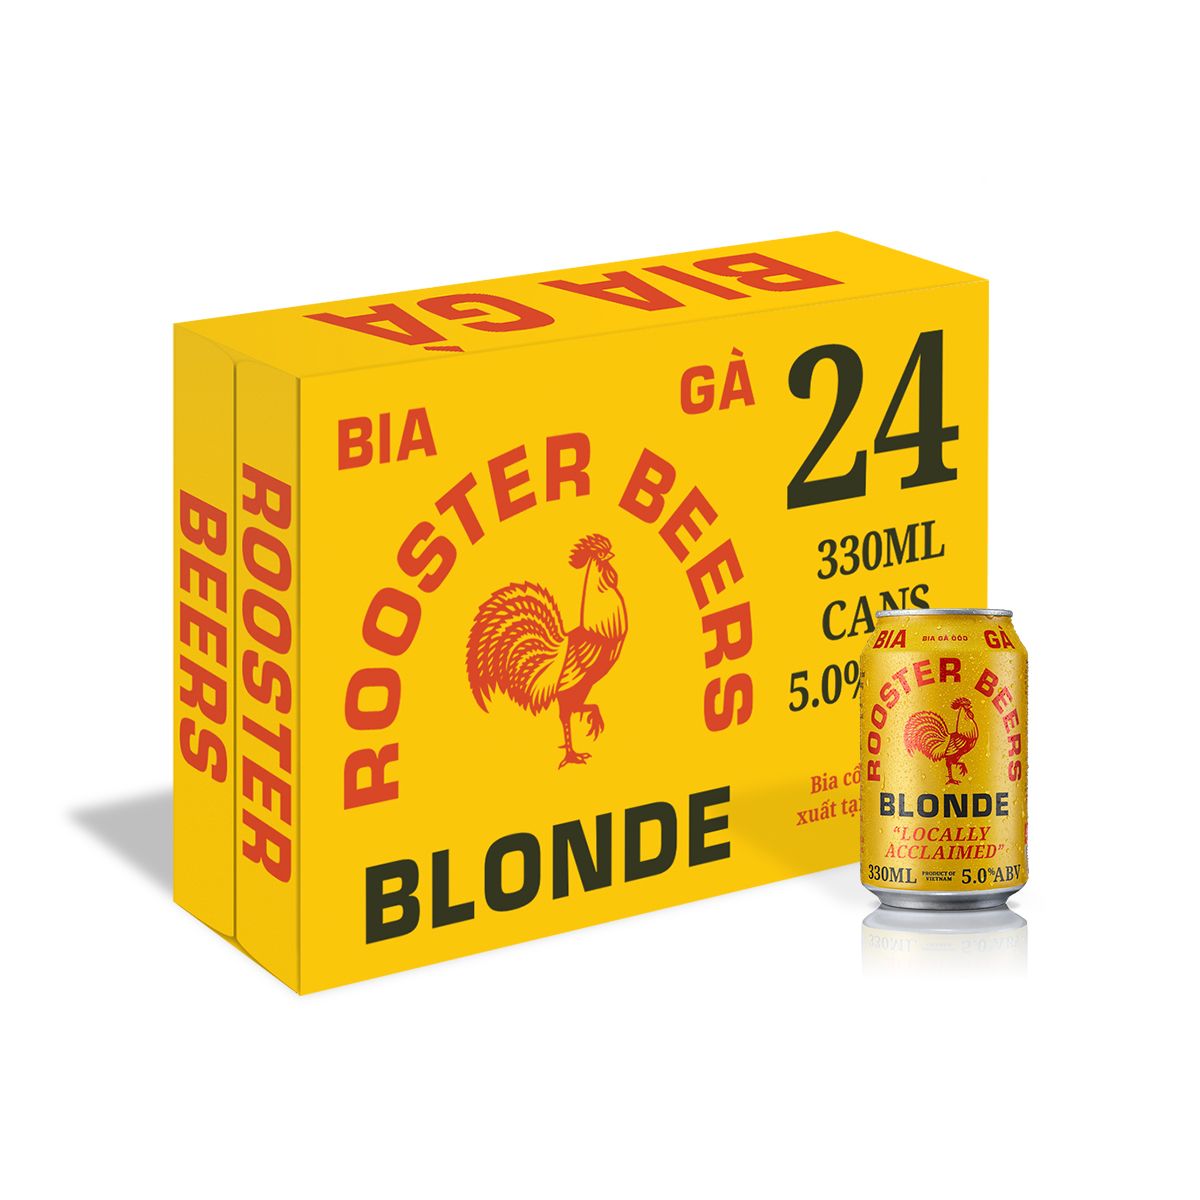  Rooster Blonde Thùng 24 Lon 330ml (Giá Sỉ Liên Hệ) 